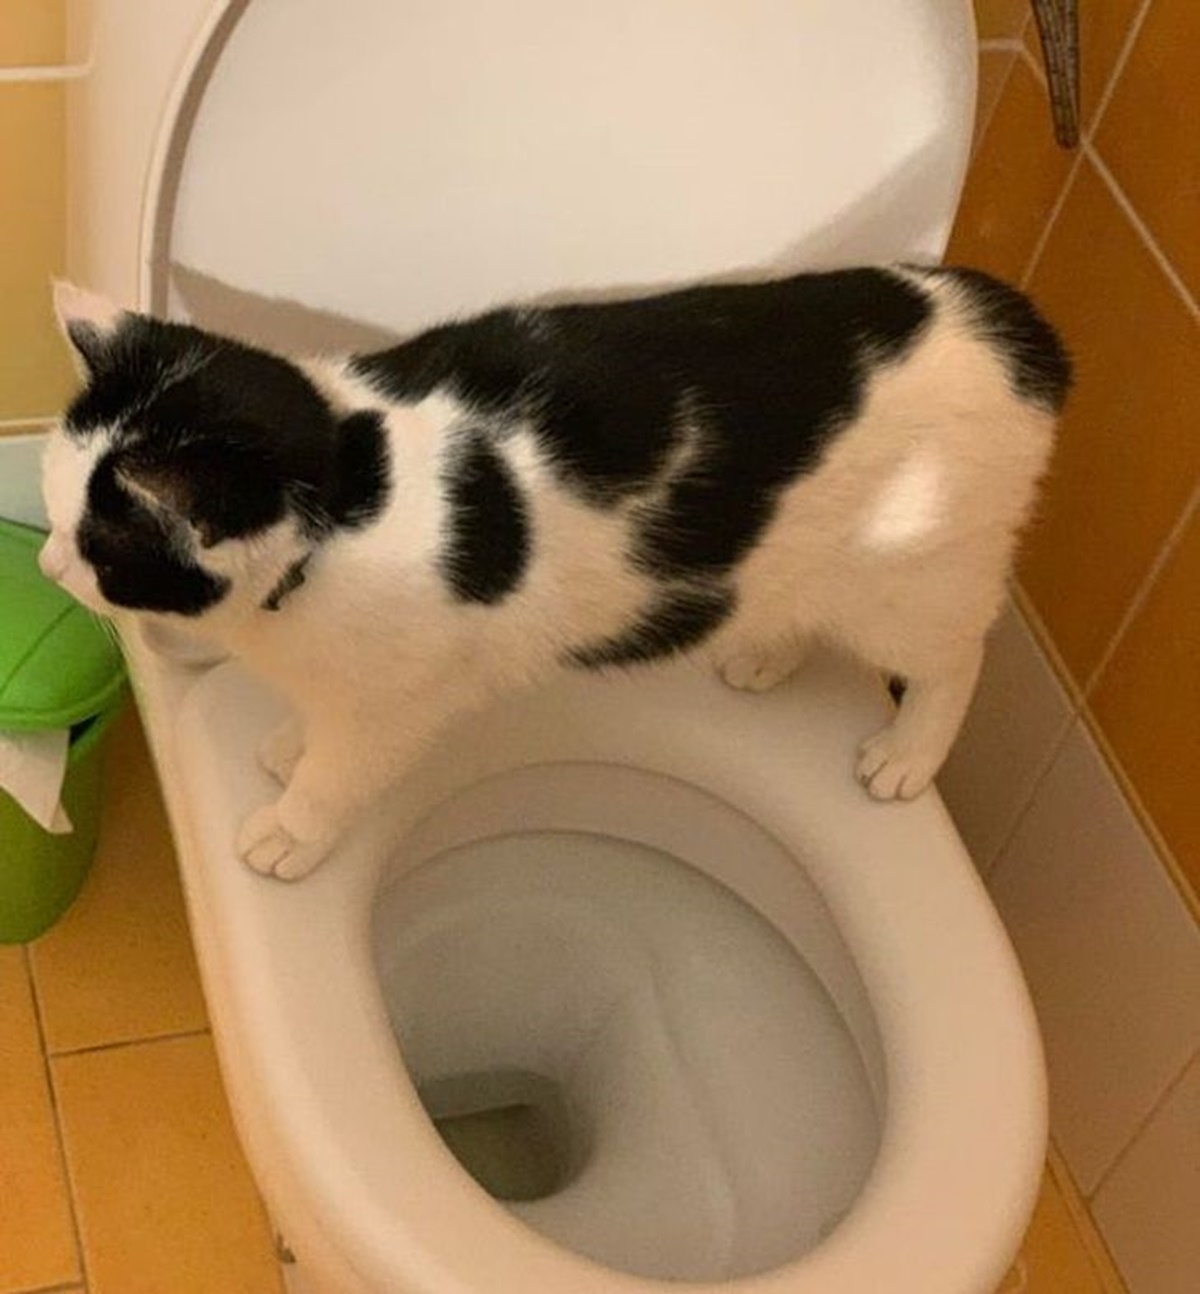 10 gatti che hanno avuto un passato da umano-gatto che sta in bagno